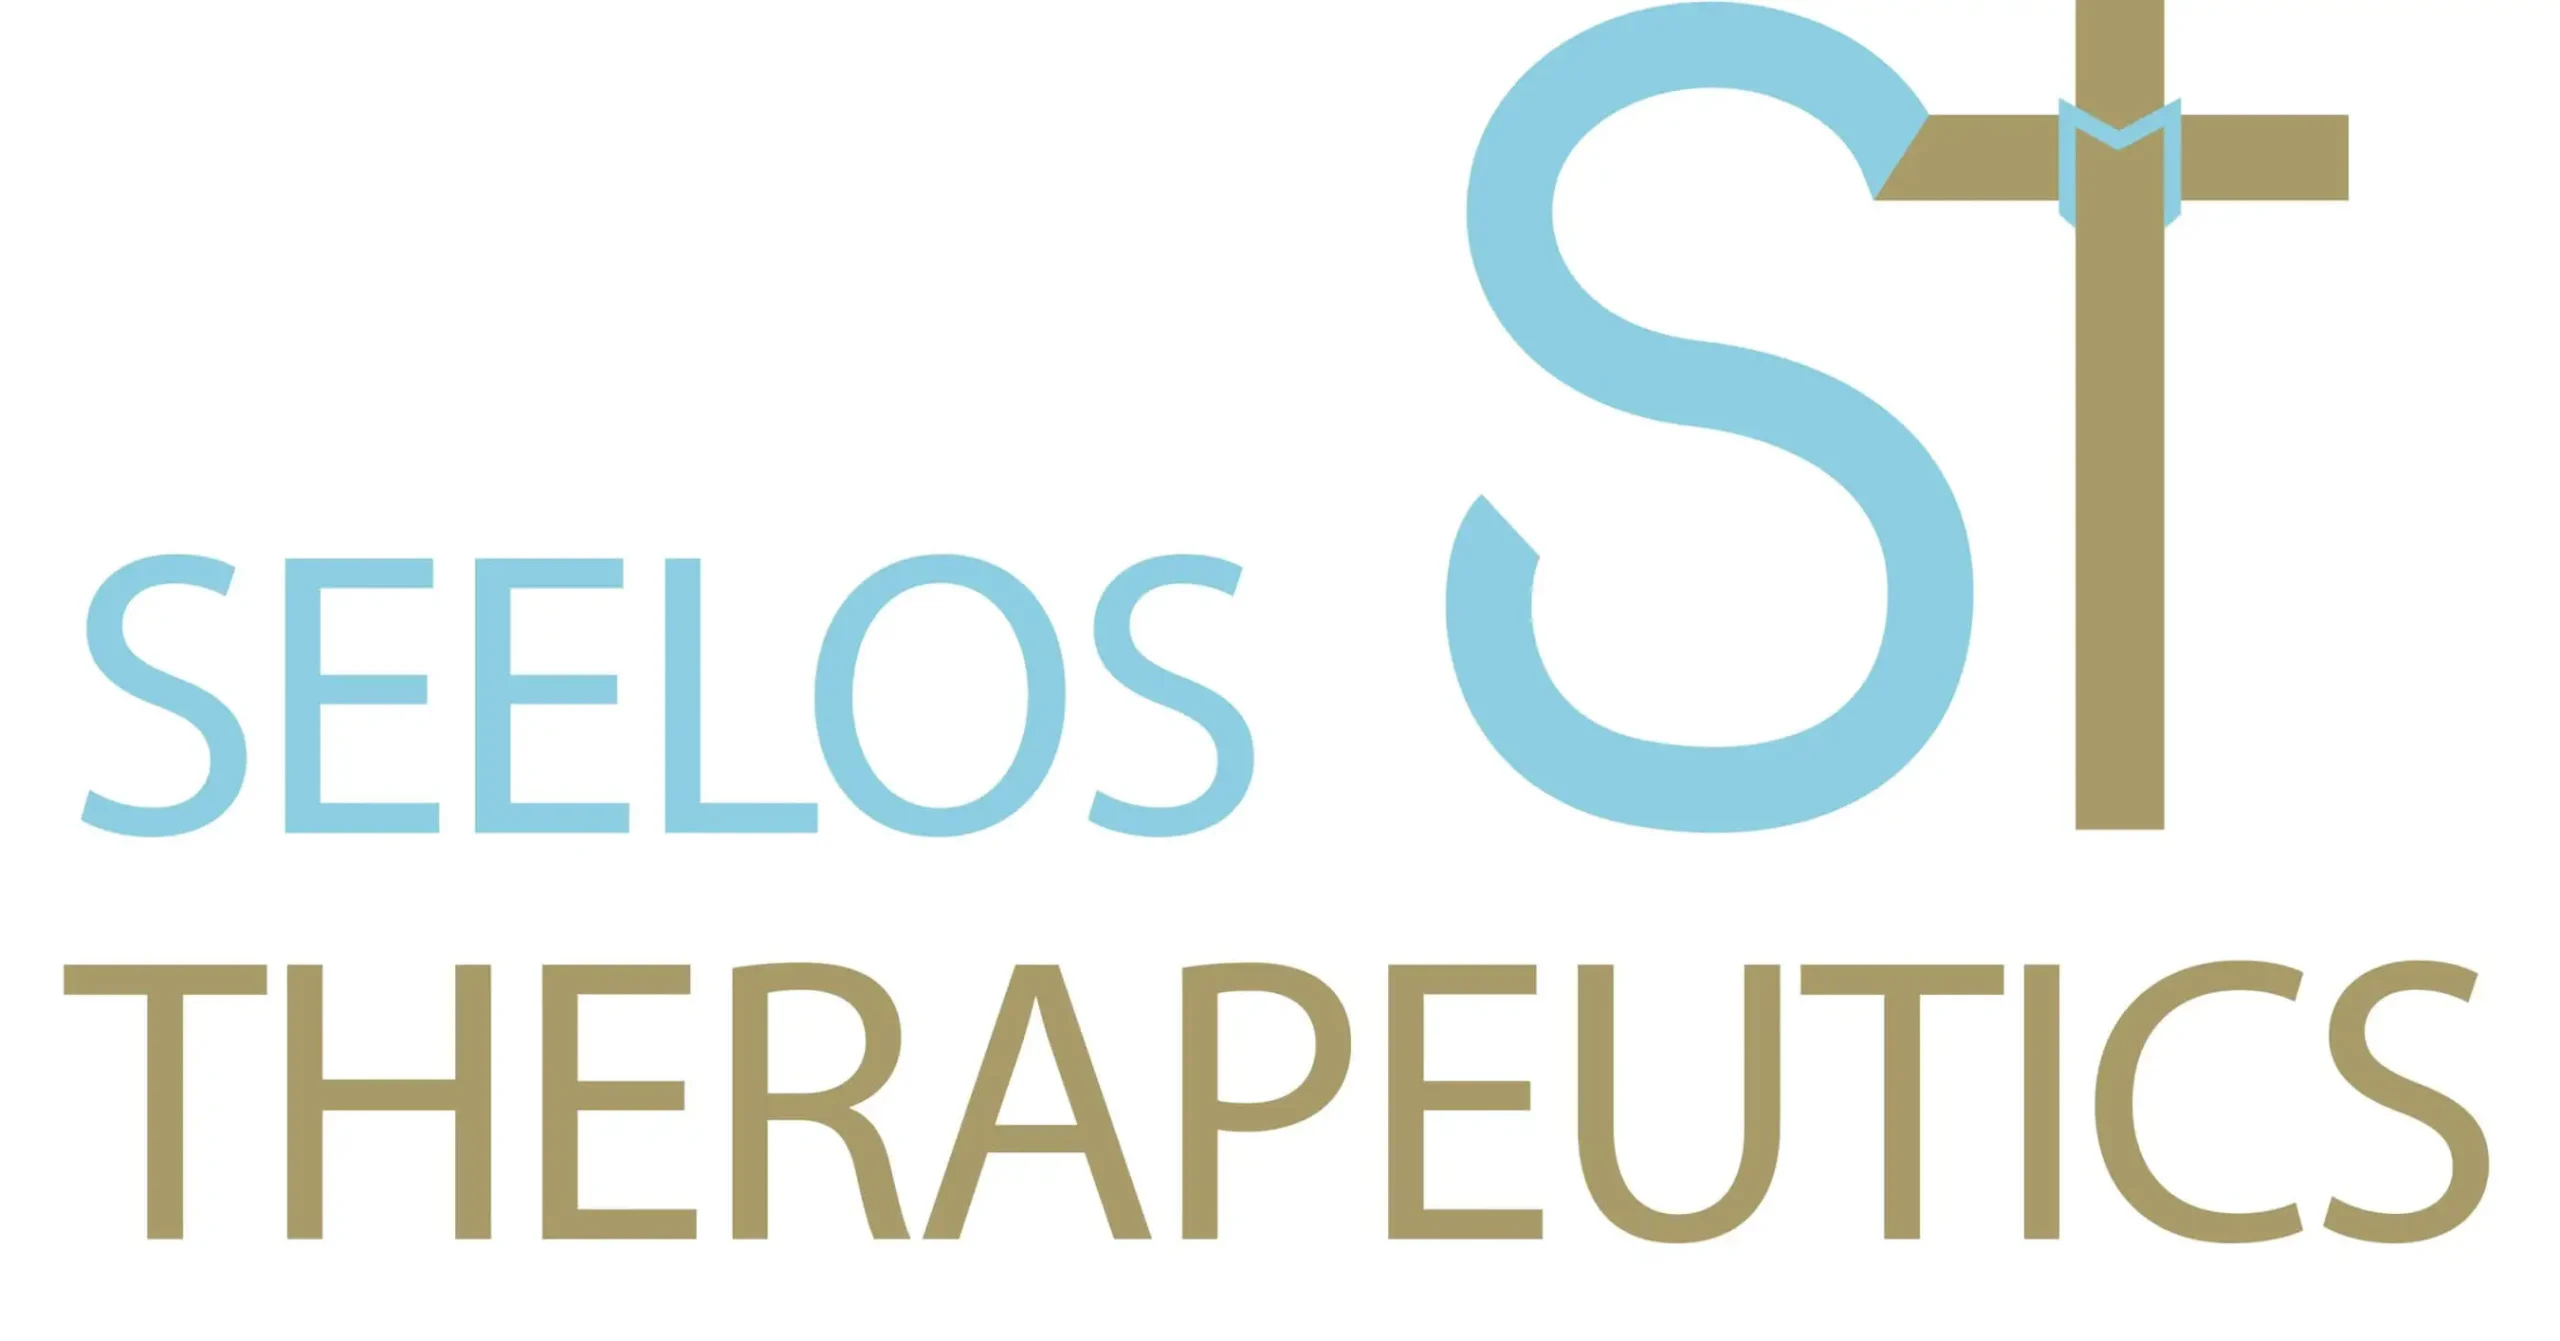 Seelos Therapeutics